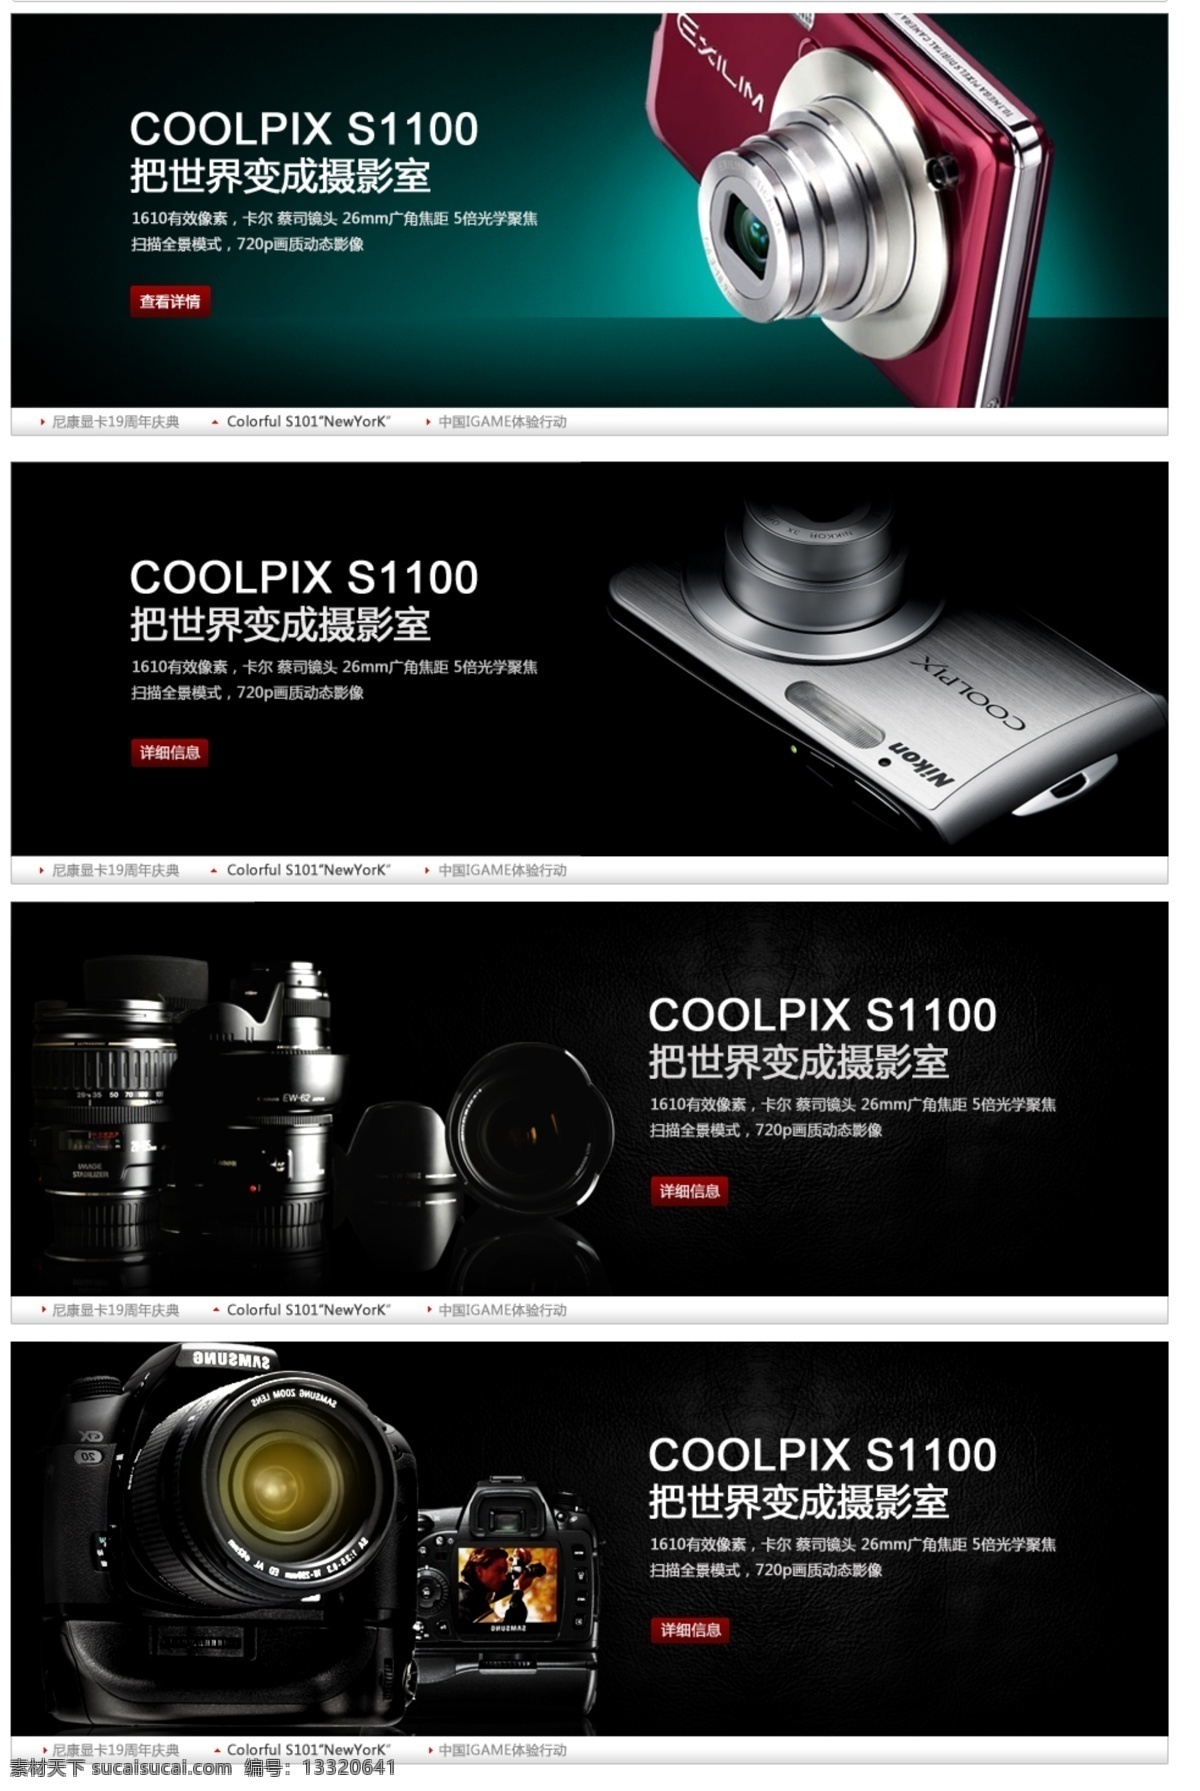 数码相机 广告 促销 淘宝 淘宝素材 其他淘宝素材